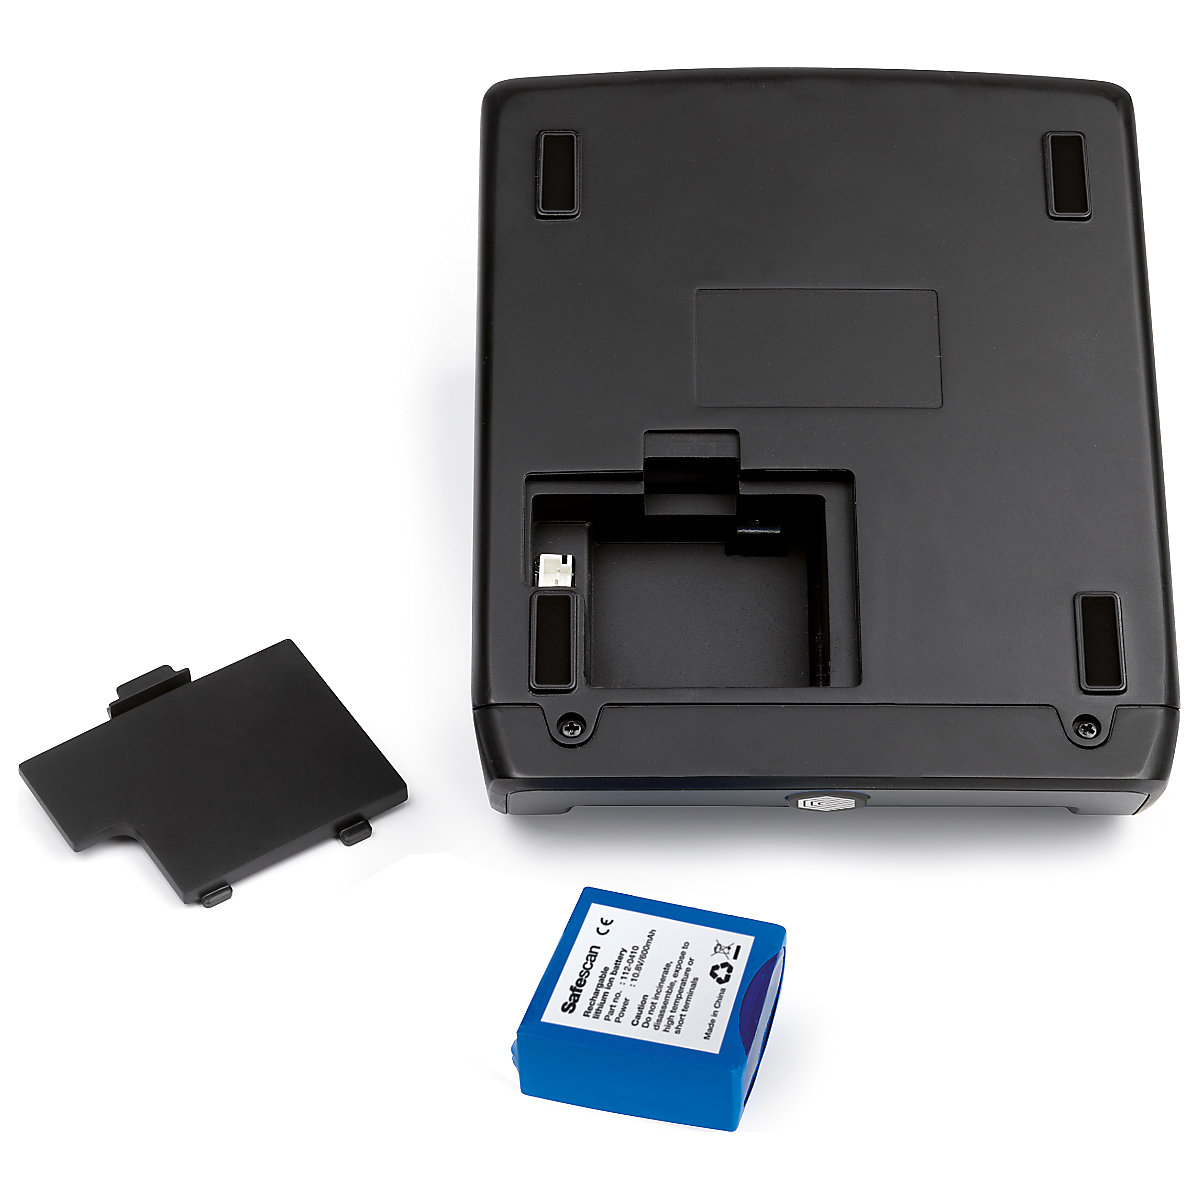 Oplaadbare batterij – Safescan (Productafbeelding 2)-1